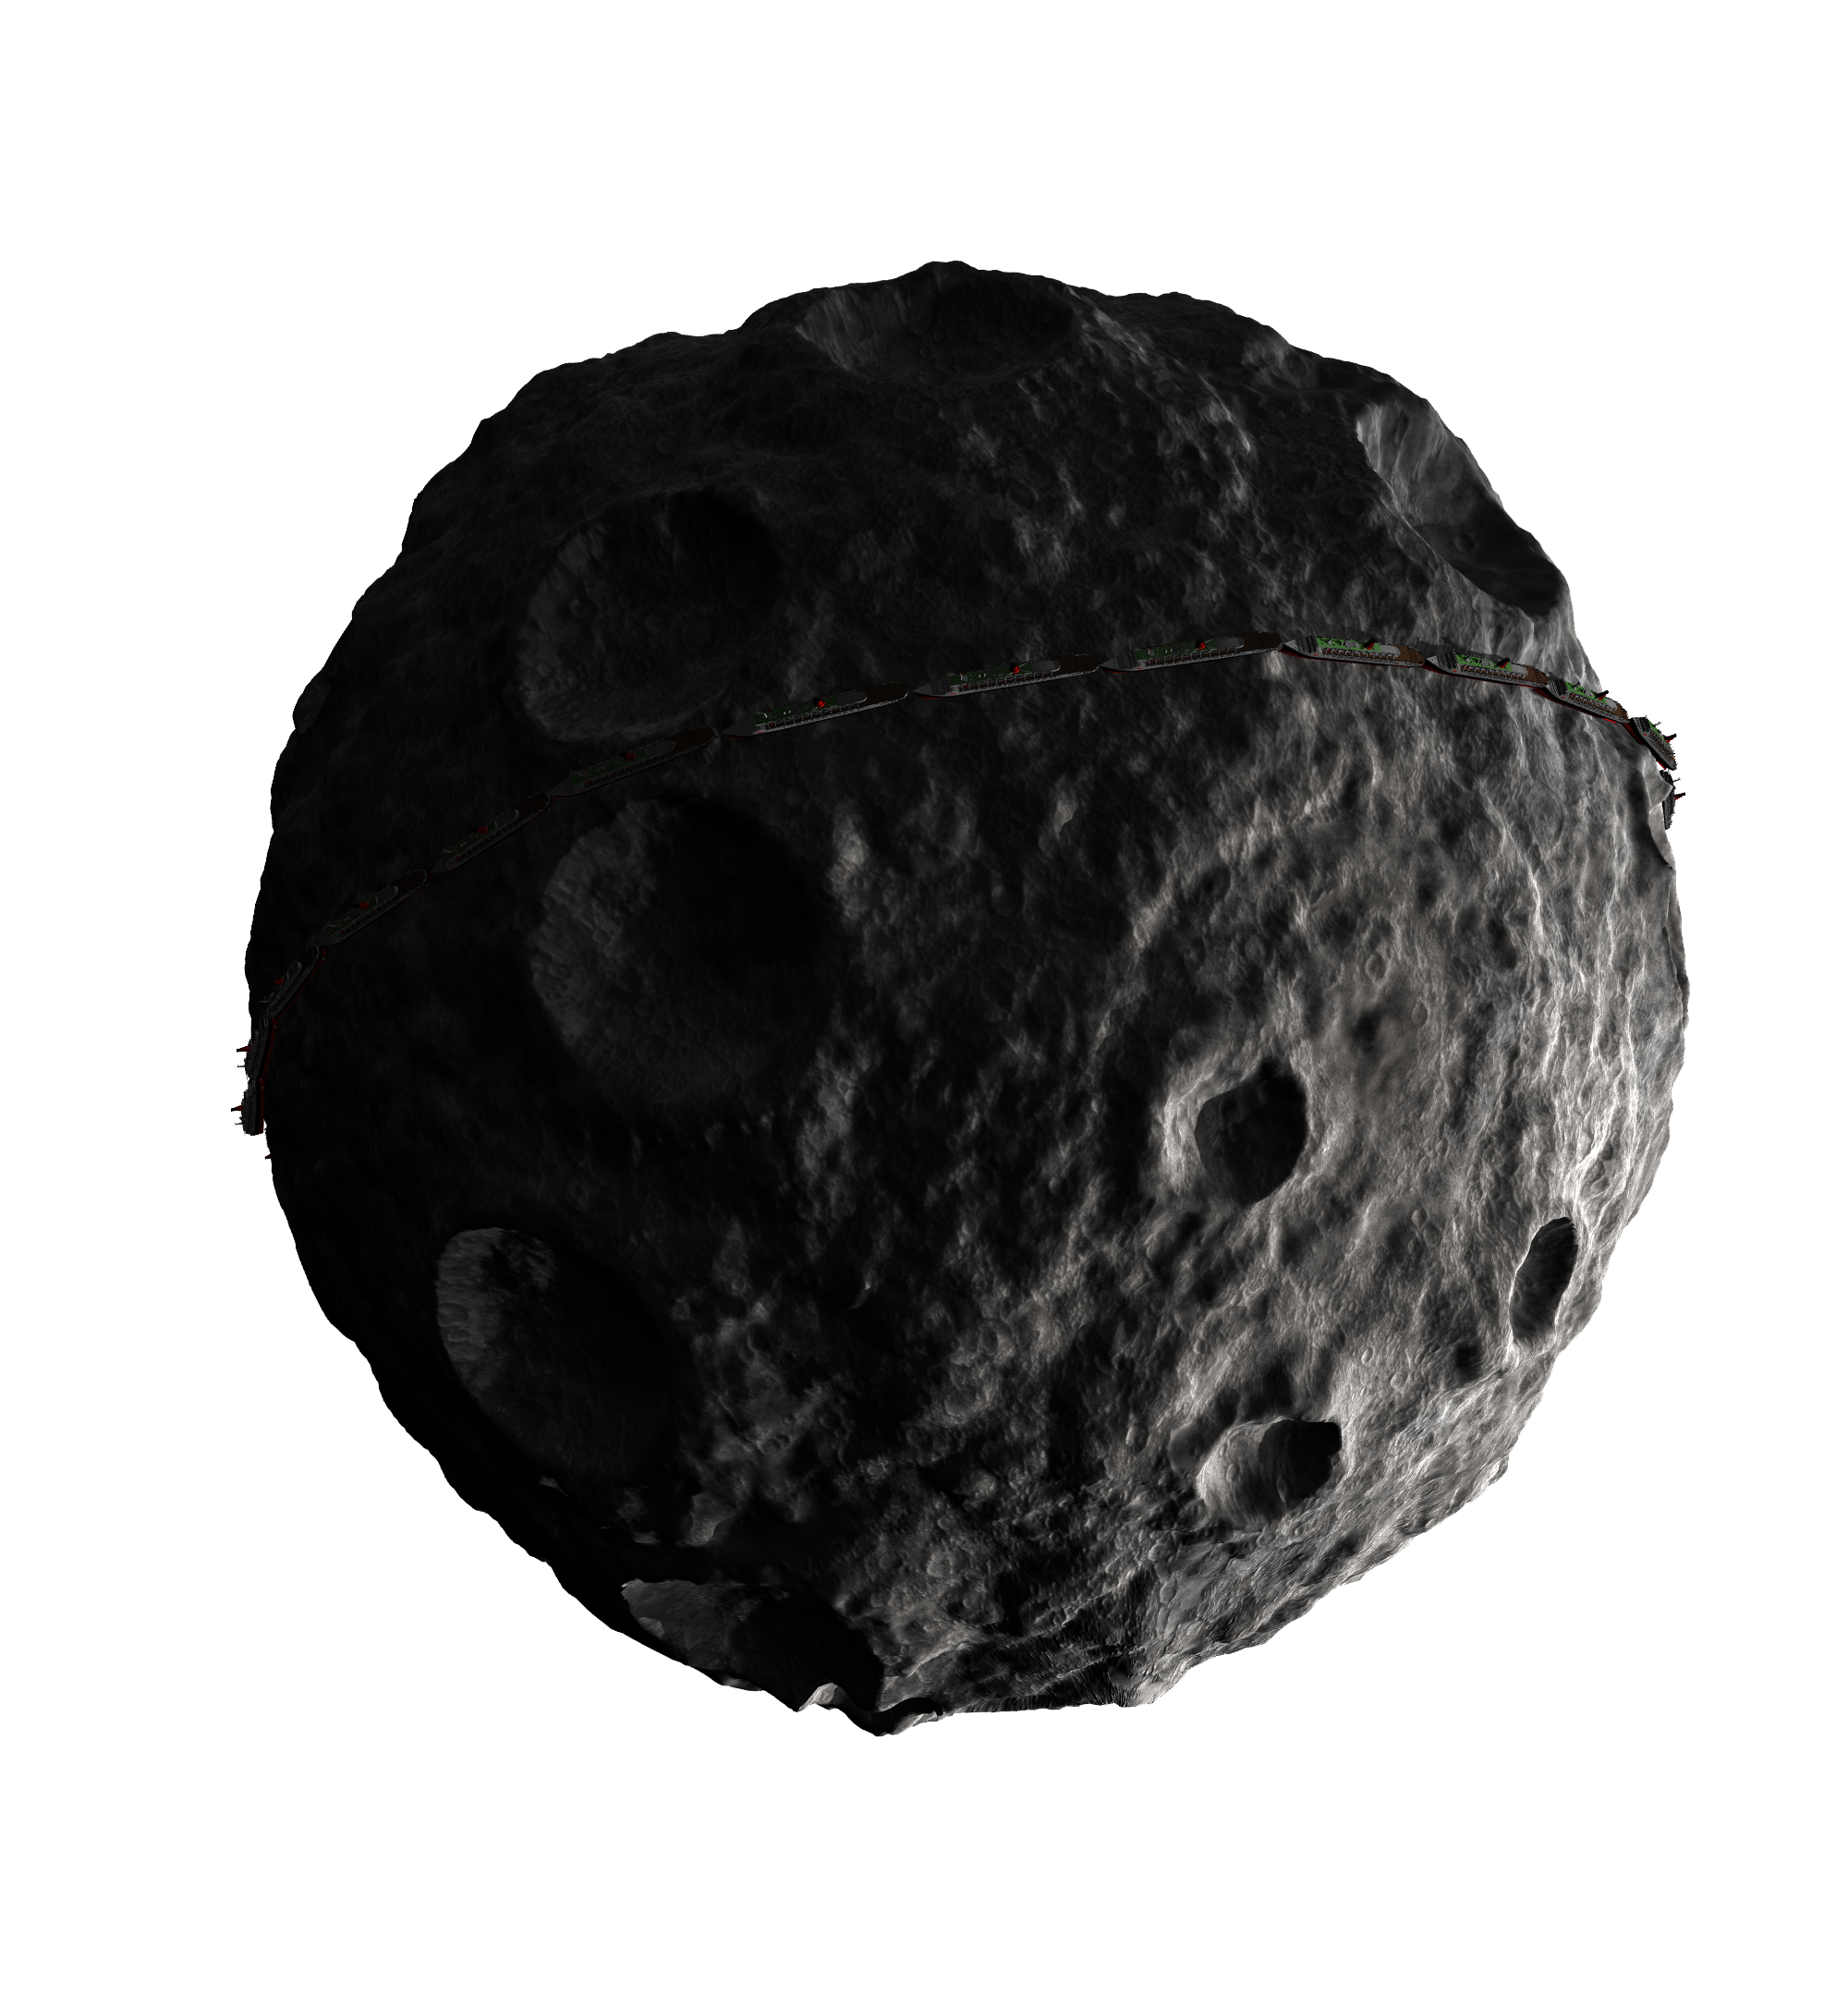 Image de PNG de météore Asteroid